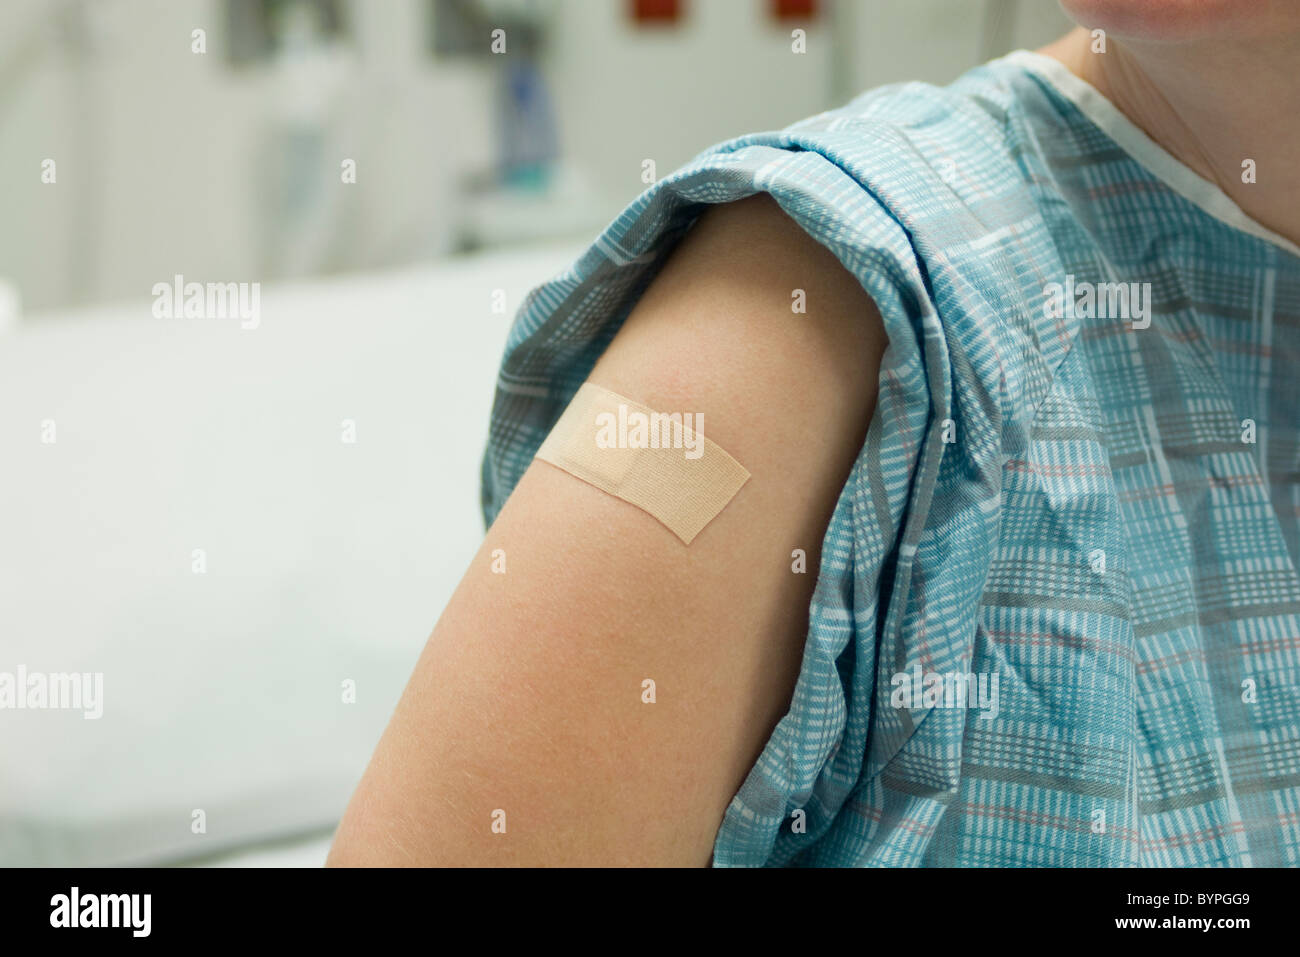 Paciente con vendaje adhesivo en el brazo Foto de stock